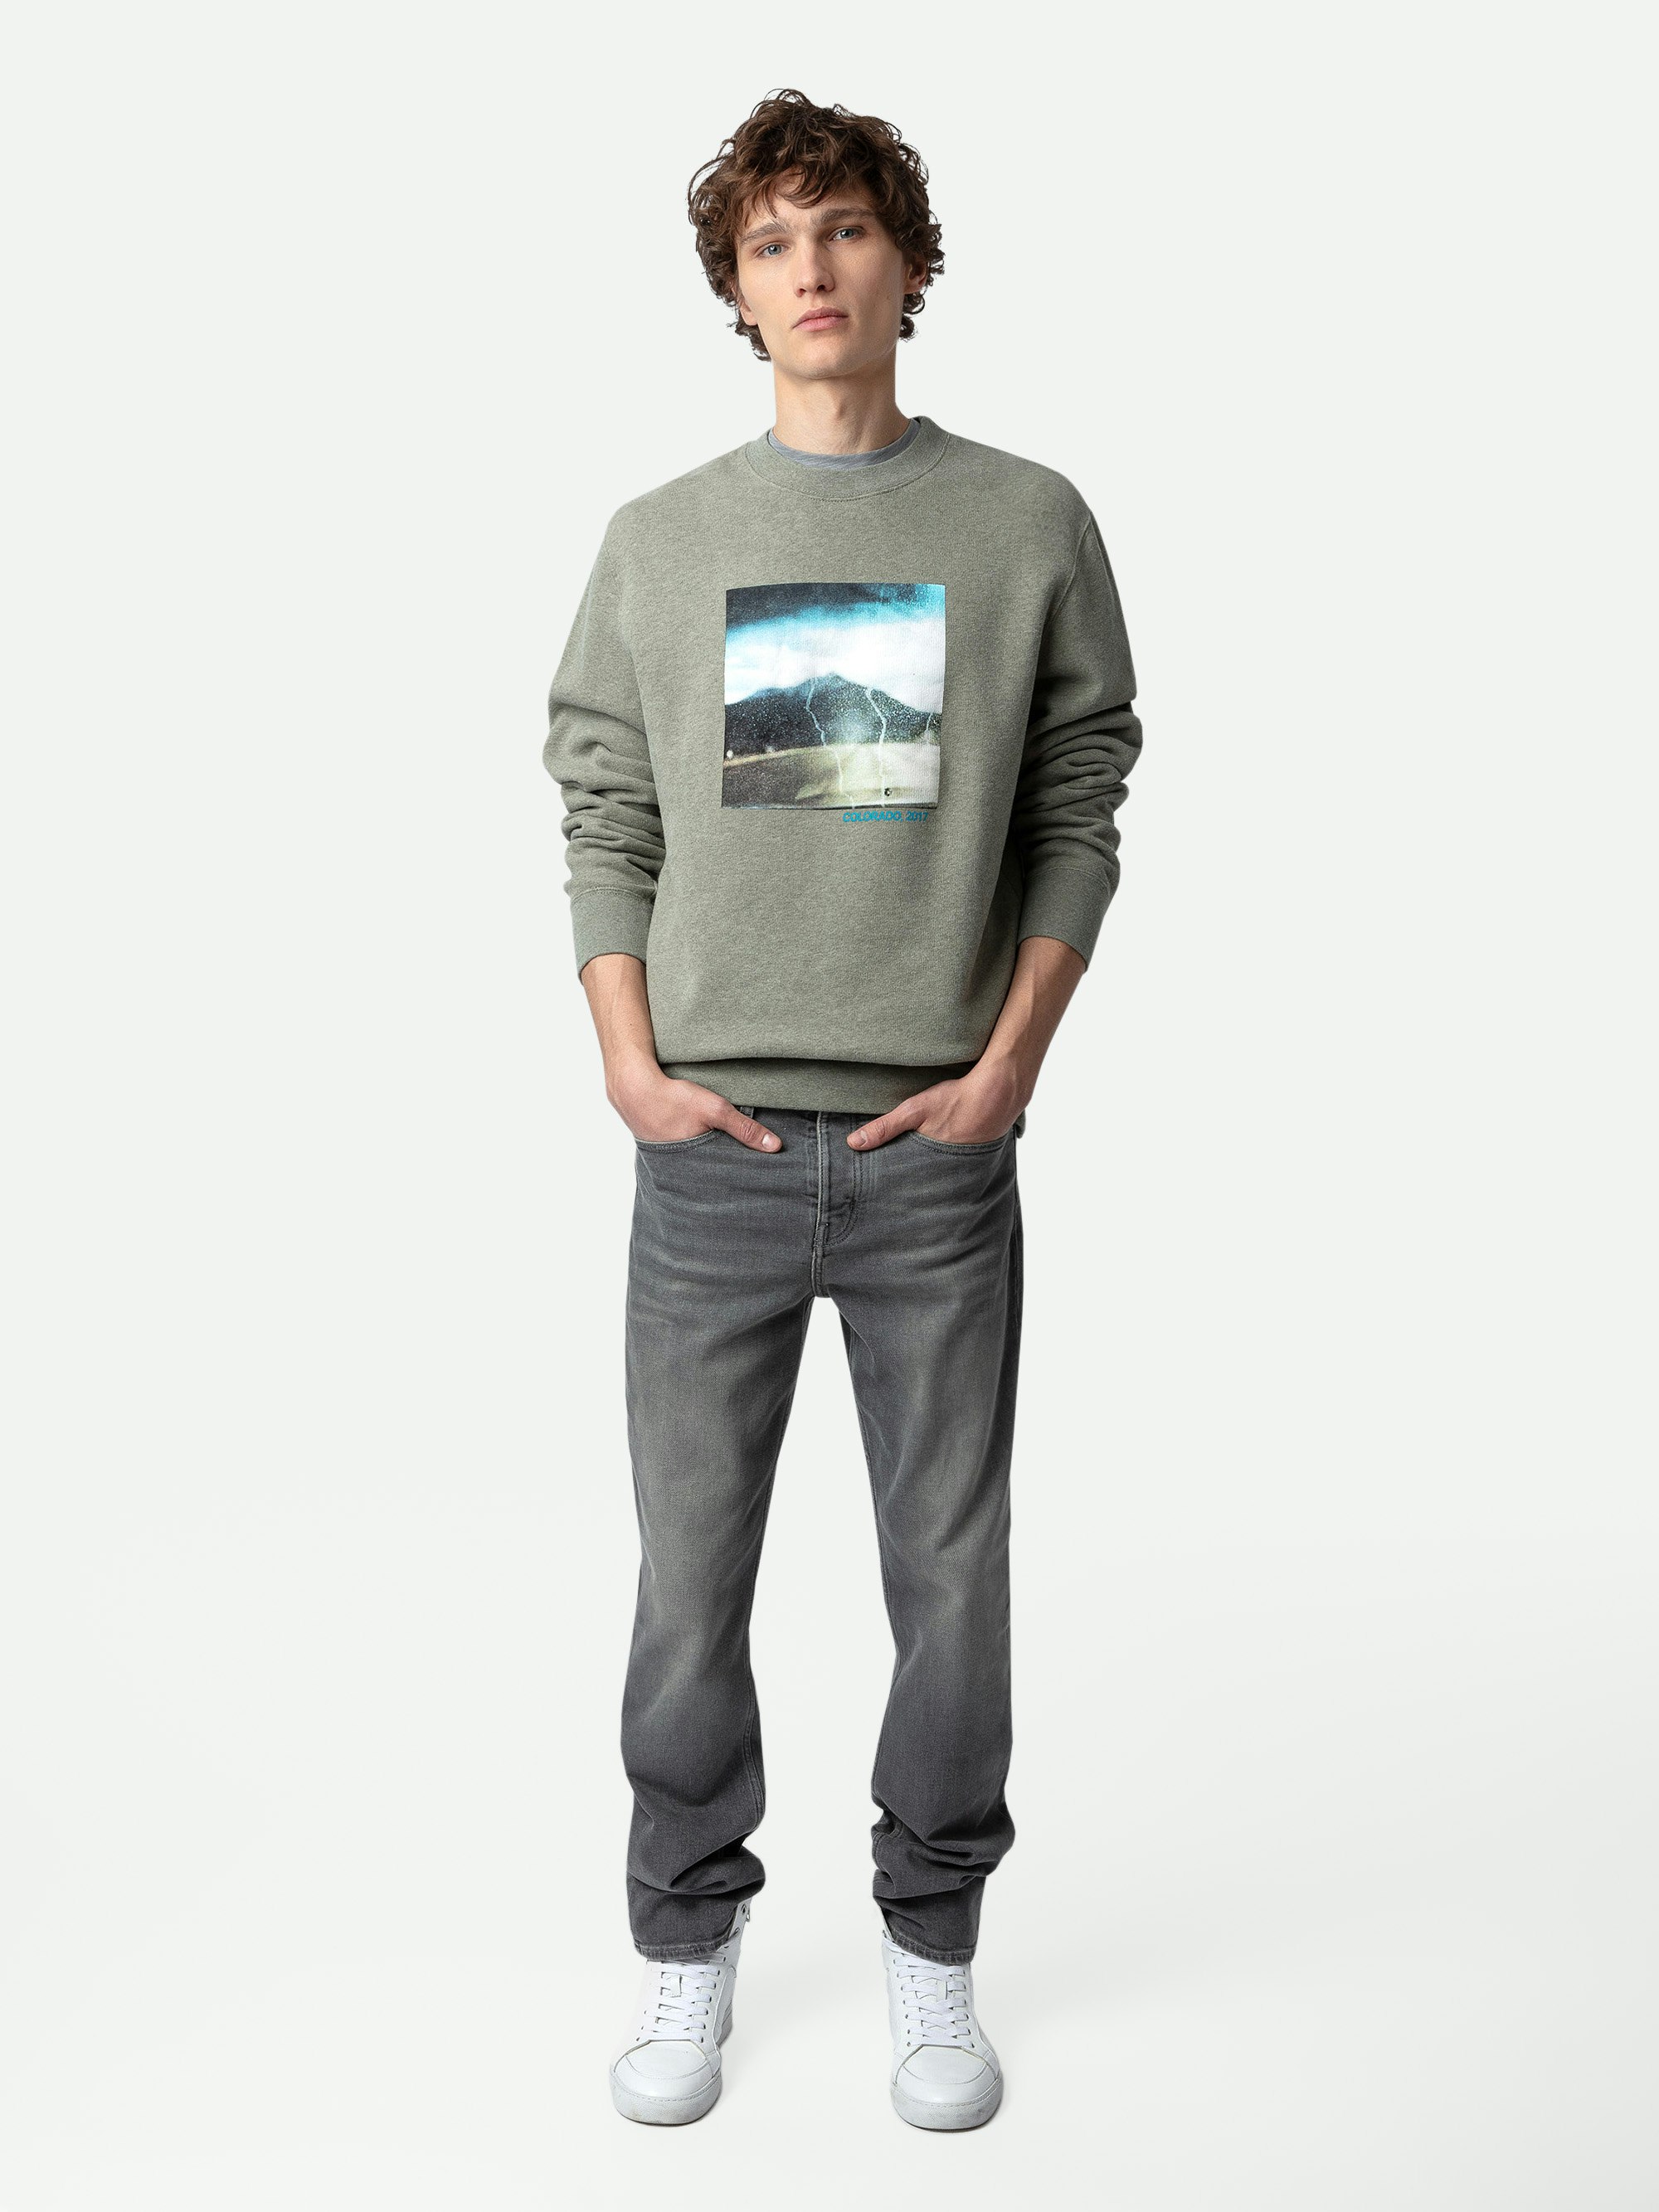 Sweatshirt Simba Fotoprint - Graues Langarm-Sweatshirt mit Fotoprint und Schriftzug.